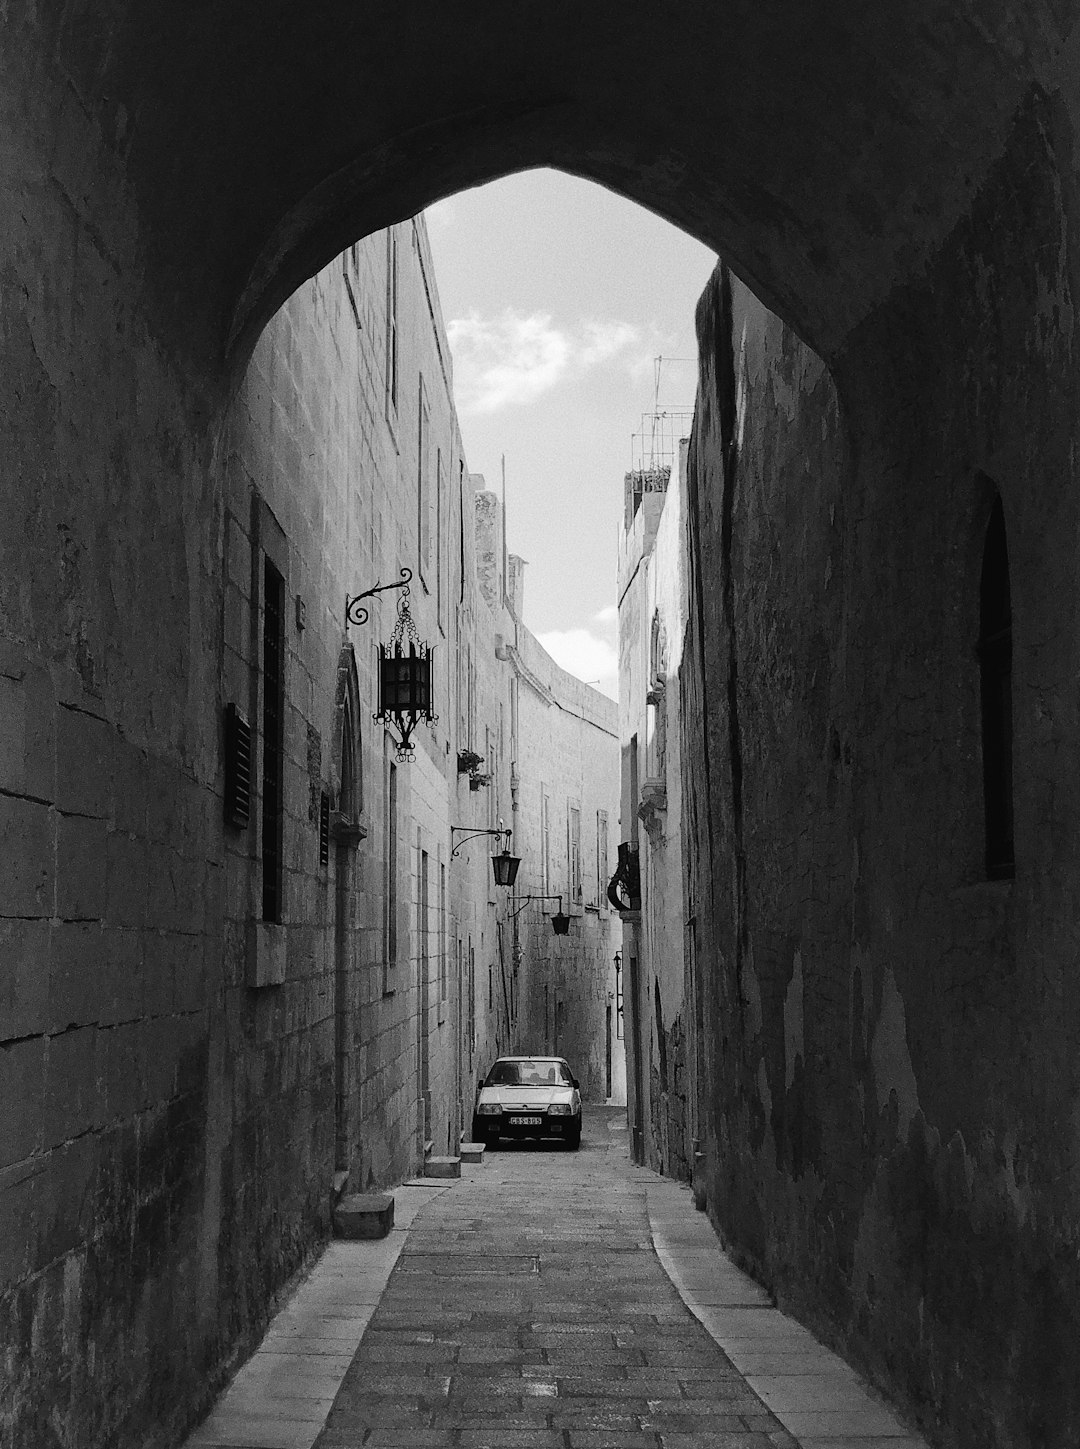 Architecture photo spot Misraħ San Pawl L-Aħrax